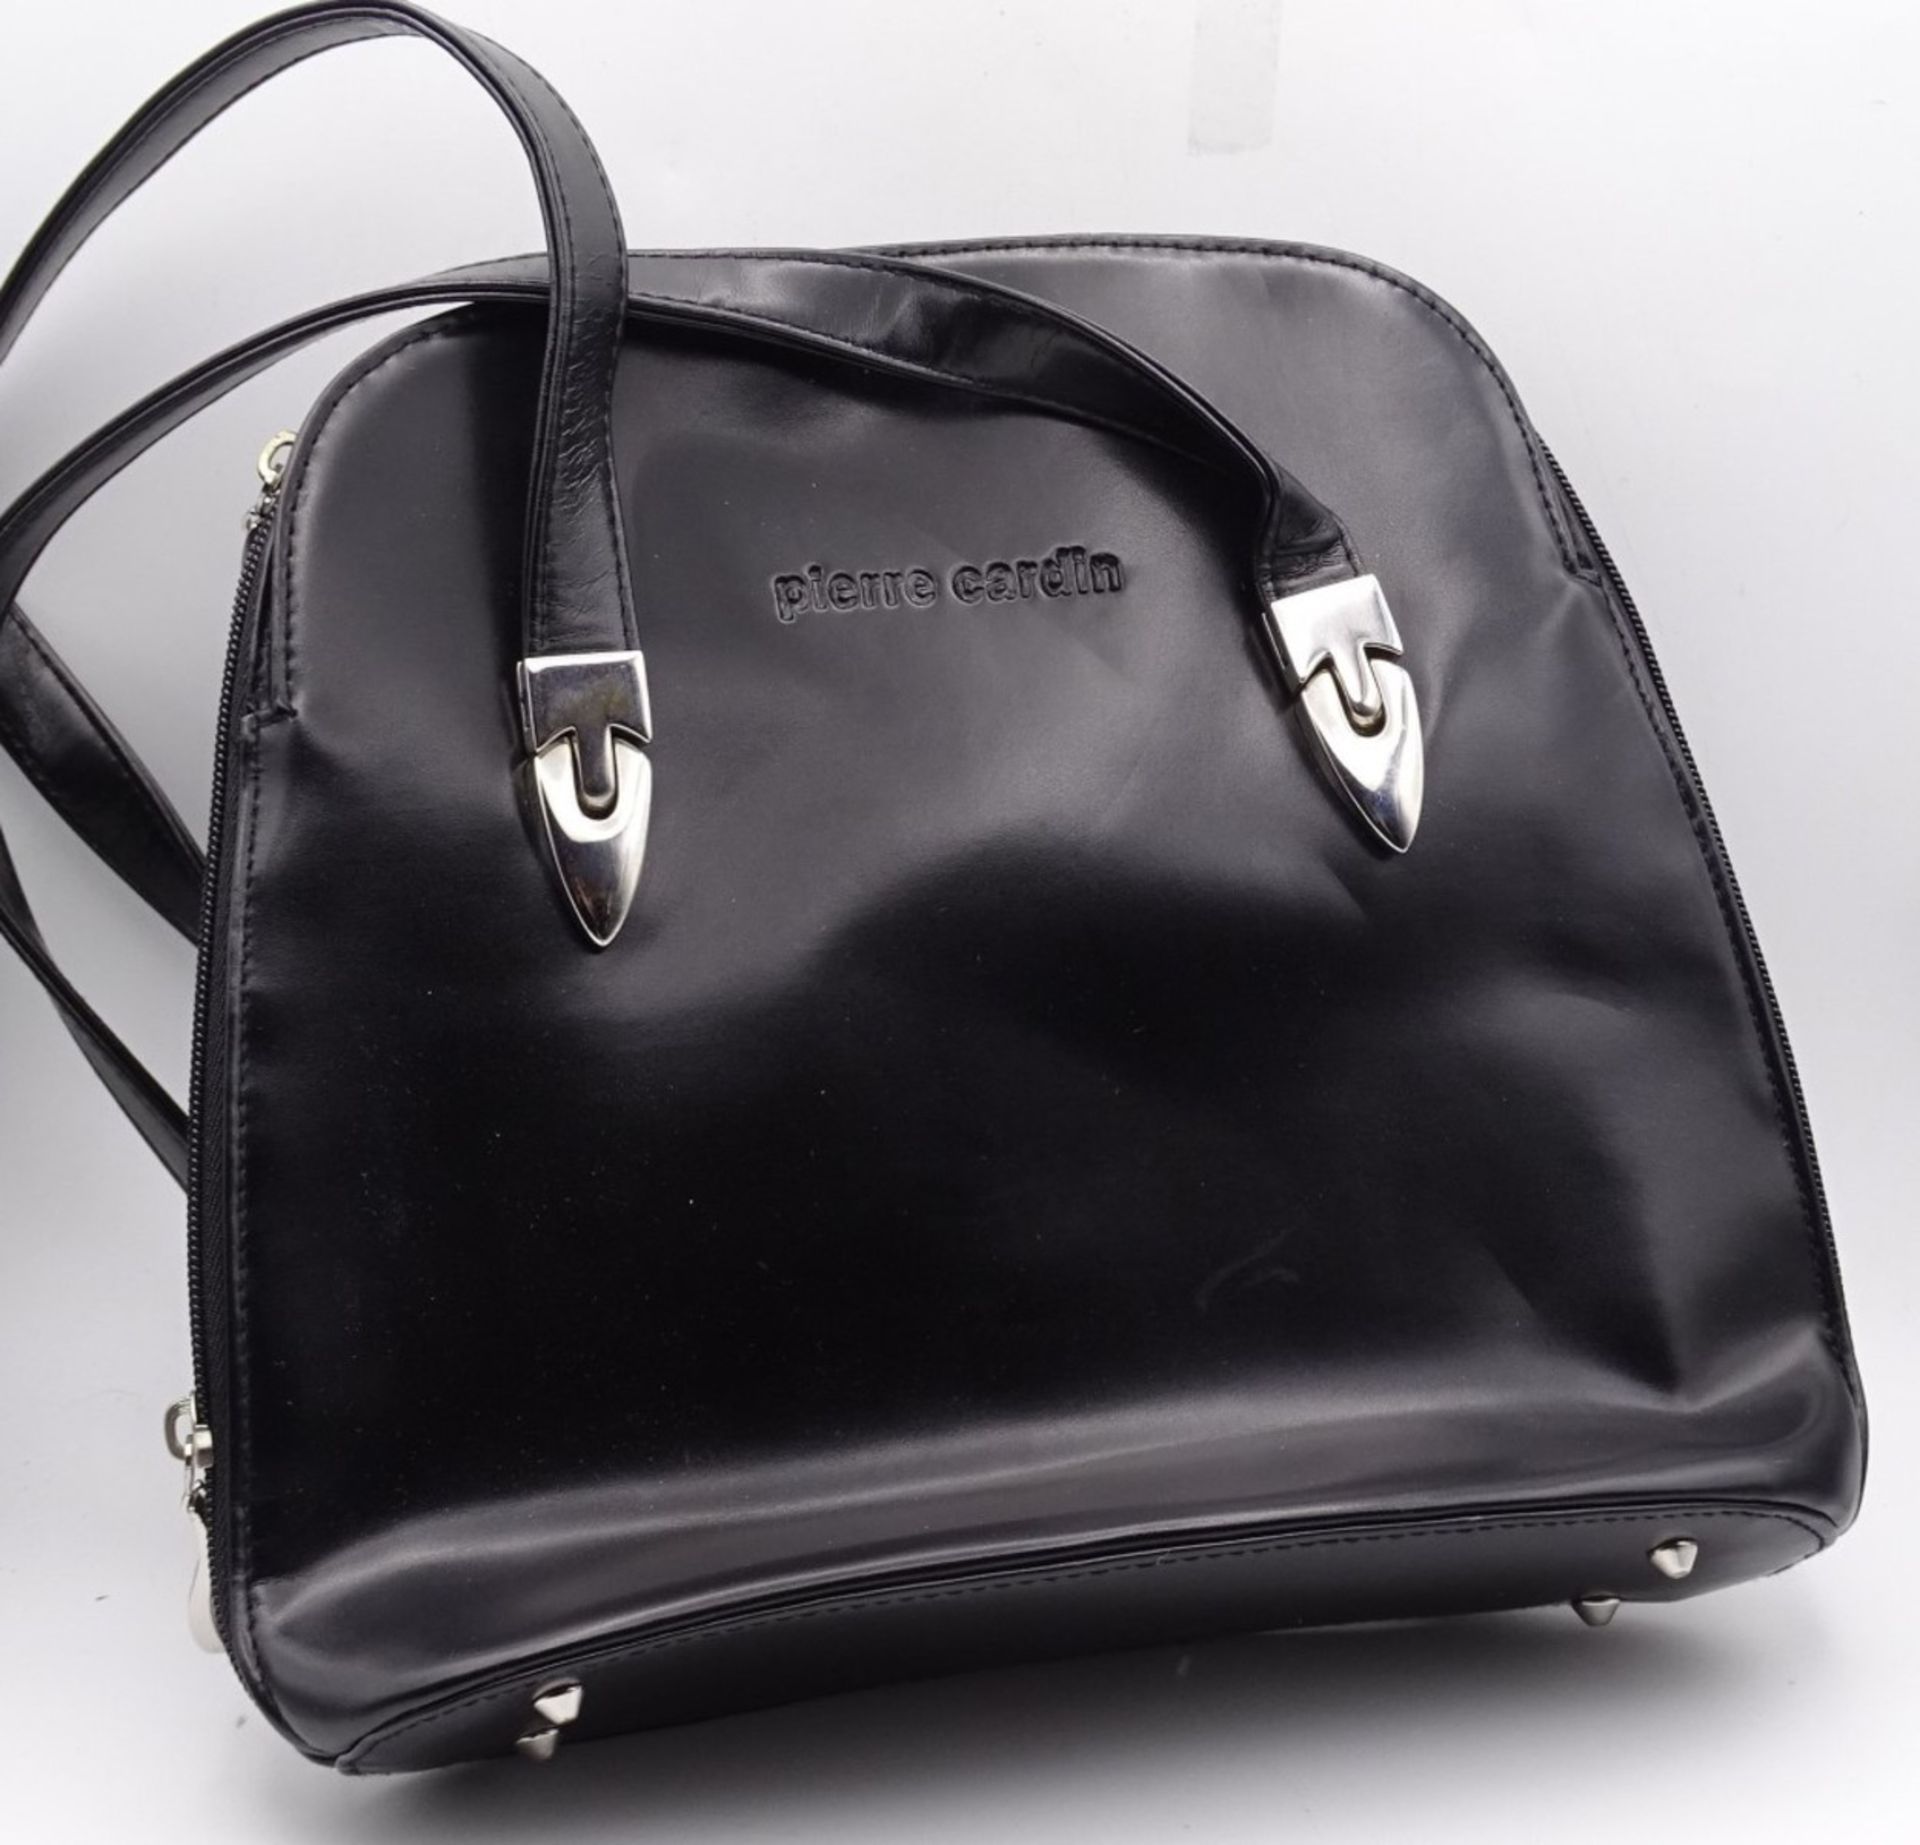 Damentasche "Pierre Cardin",schwarz,guter Zustand, 24 x 28 cm